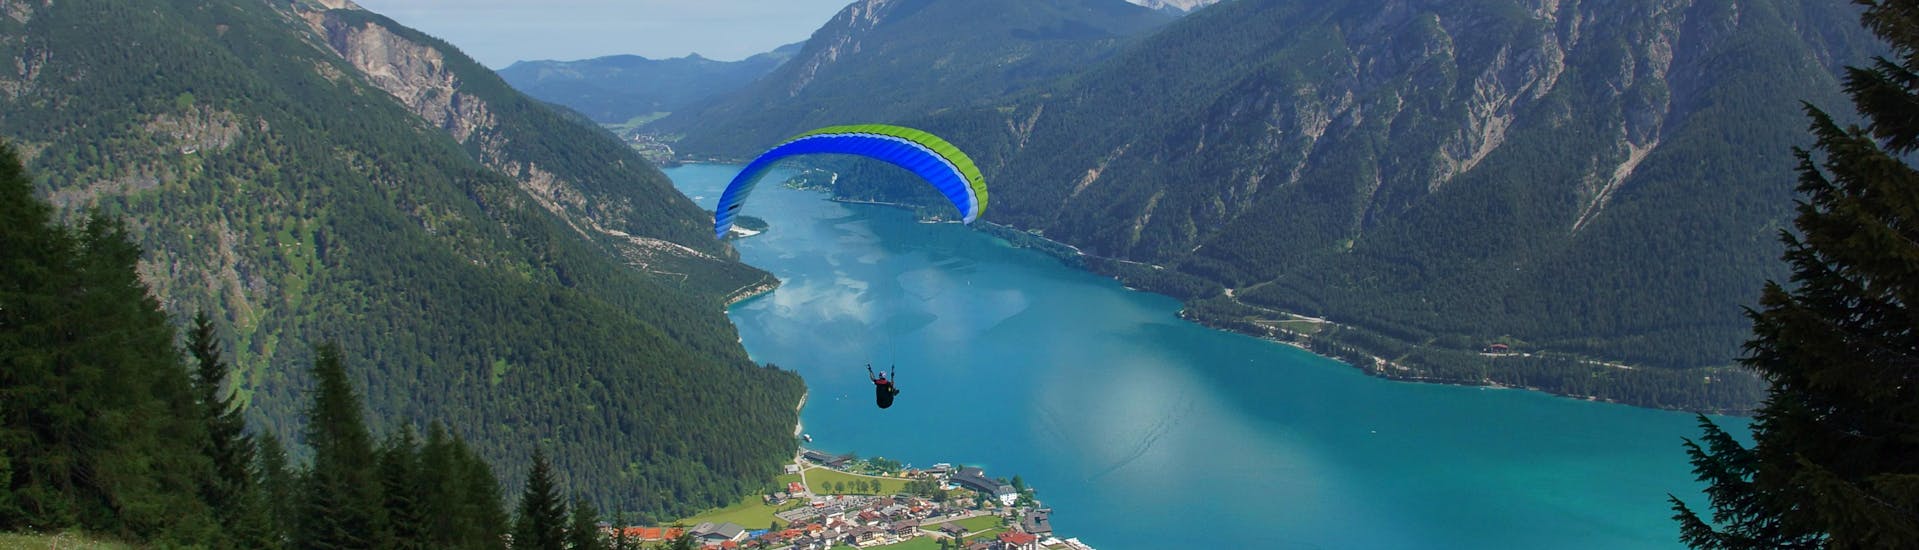 Un parapentiste est émerveillé par le paysage lors d'un vol en parapente biplace dans la célèbre destination de parapente Maurach.